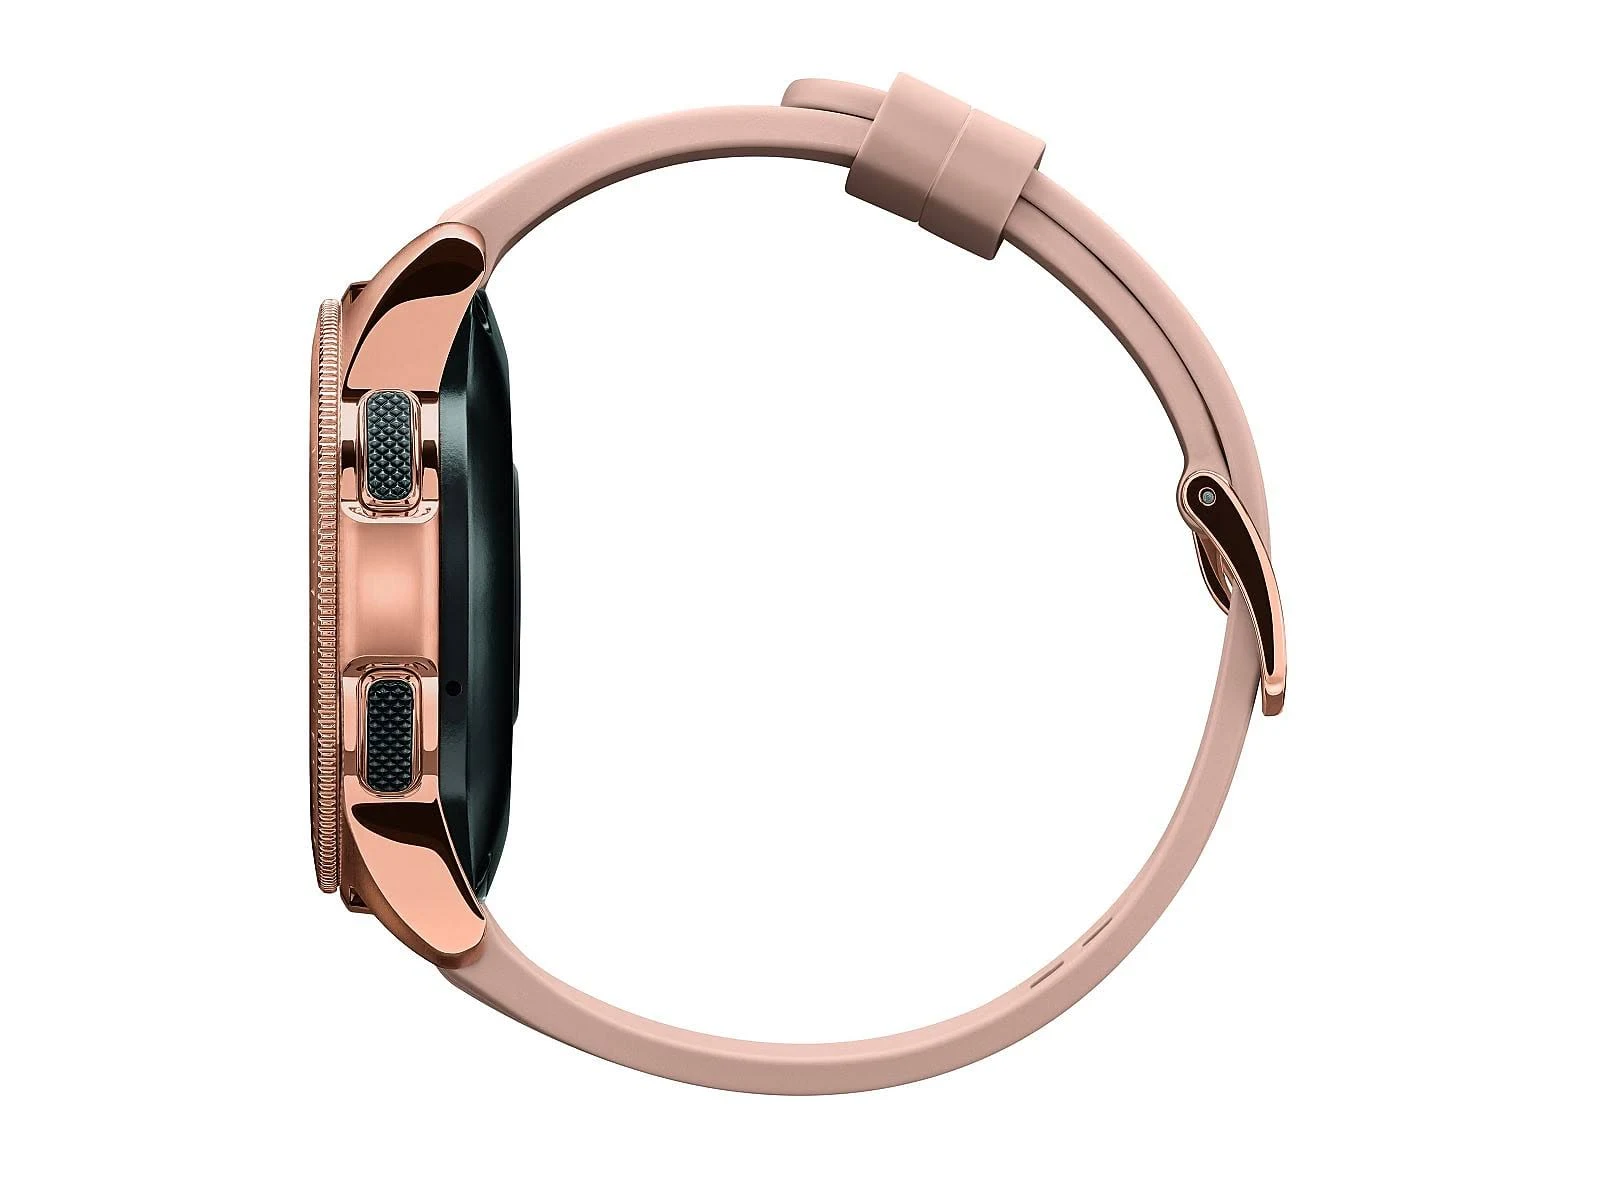 Samsung ¨C Galaxy Watch Smartwatch 42mm Stainless Steel LTE (Unlocked) ¨C Rose Gold